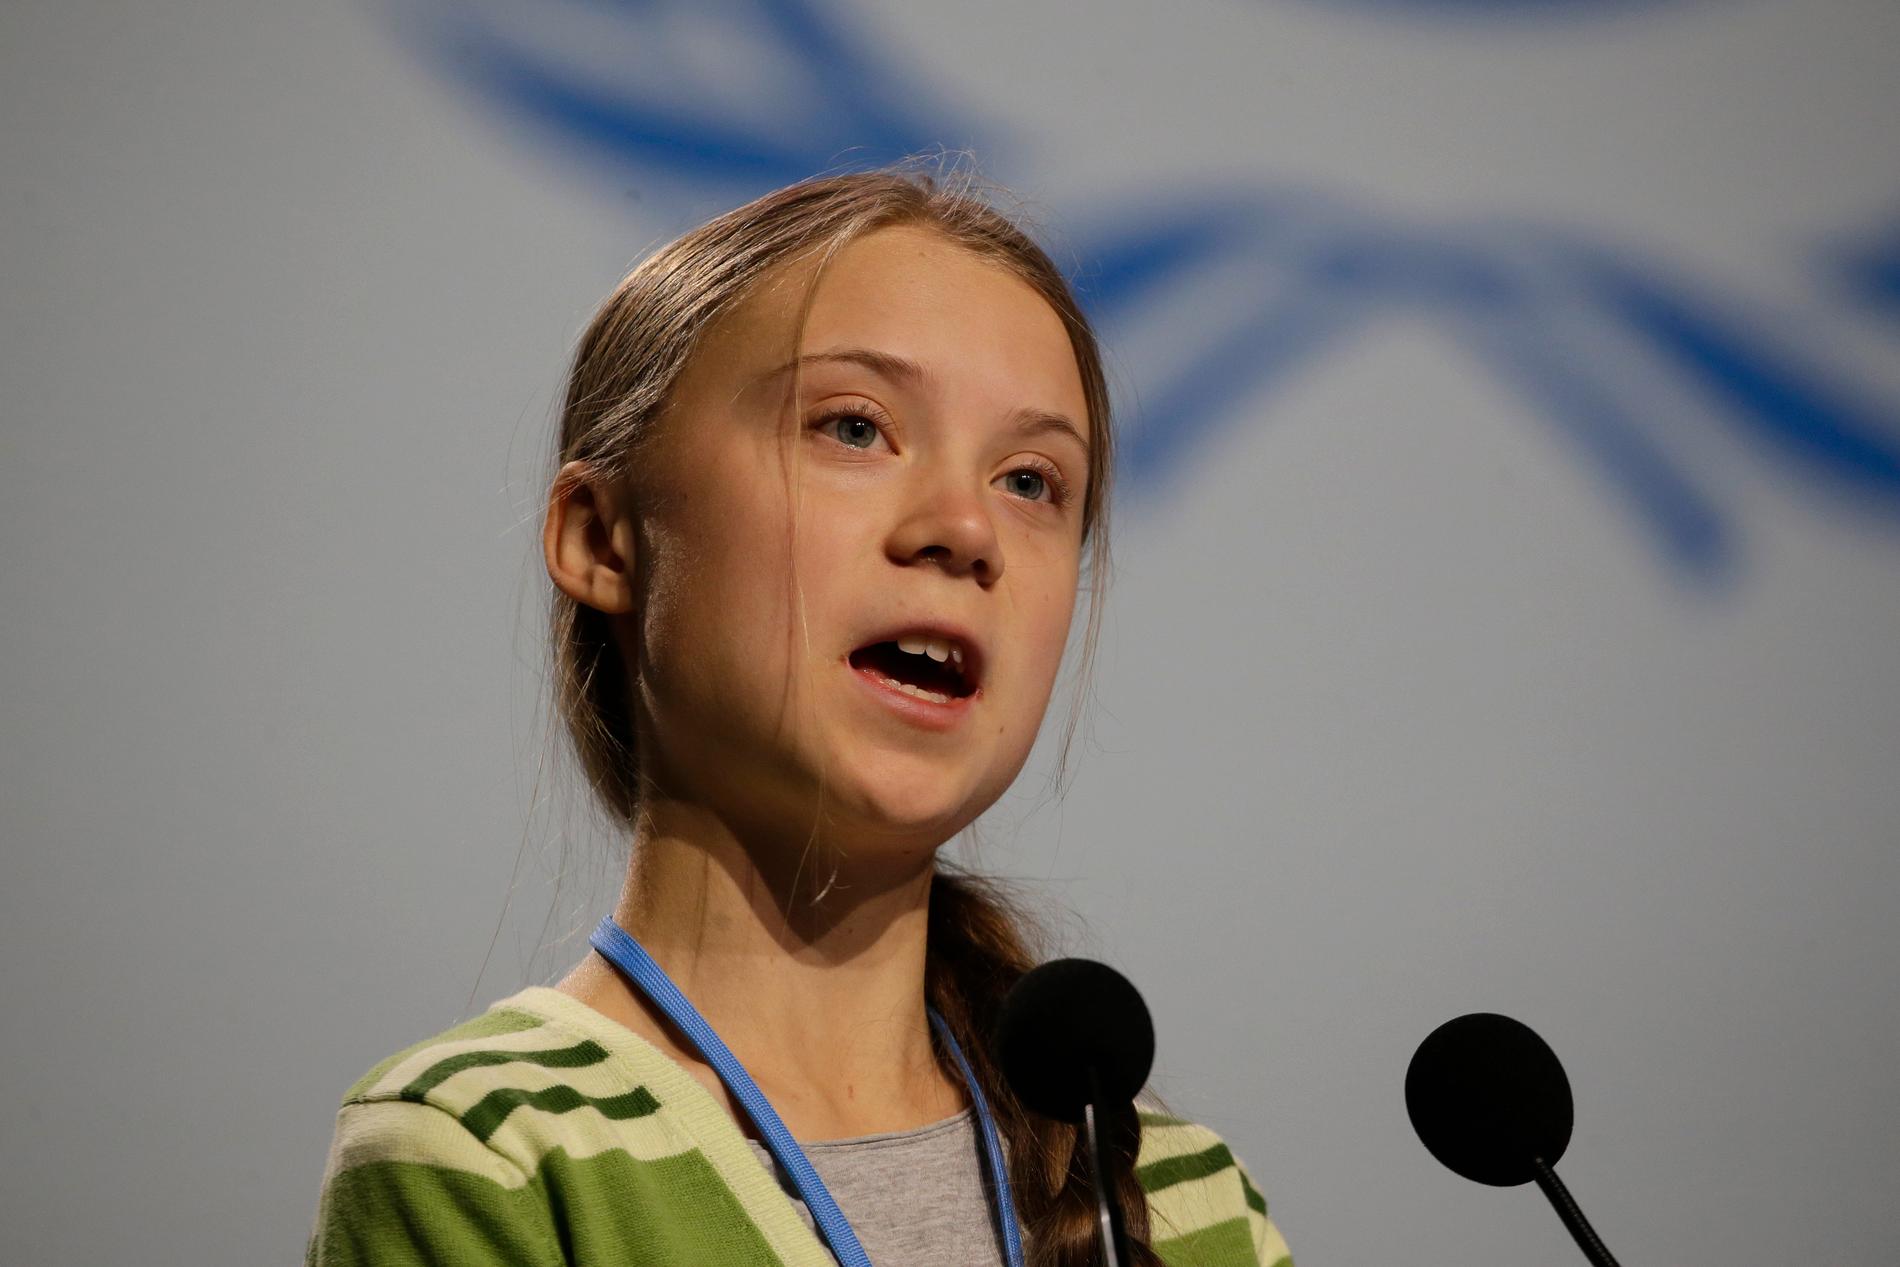 Klimataktivisten Greta Thunberg talade inför delegater vid FN:s klimatmöte COP25 i Madrid på onsdagsförmiddagen.